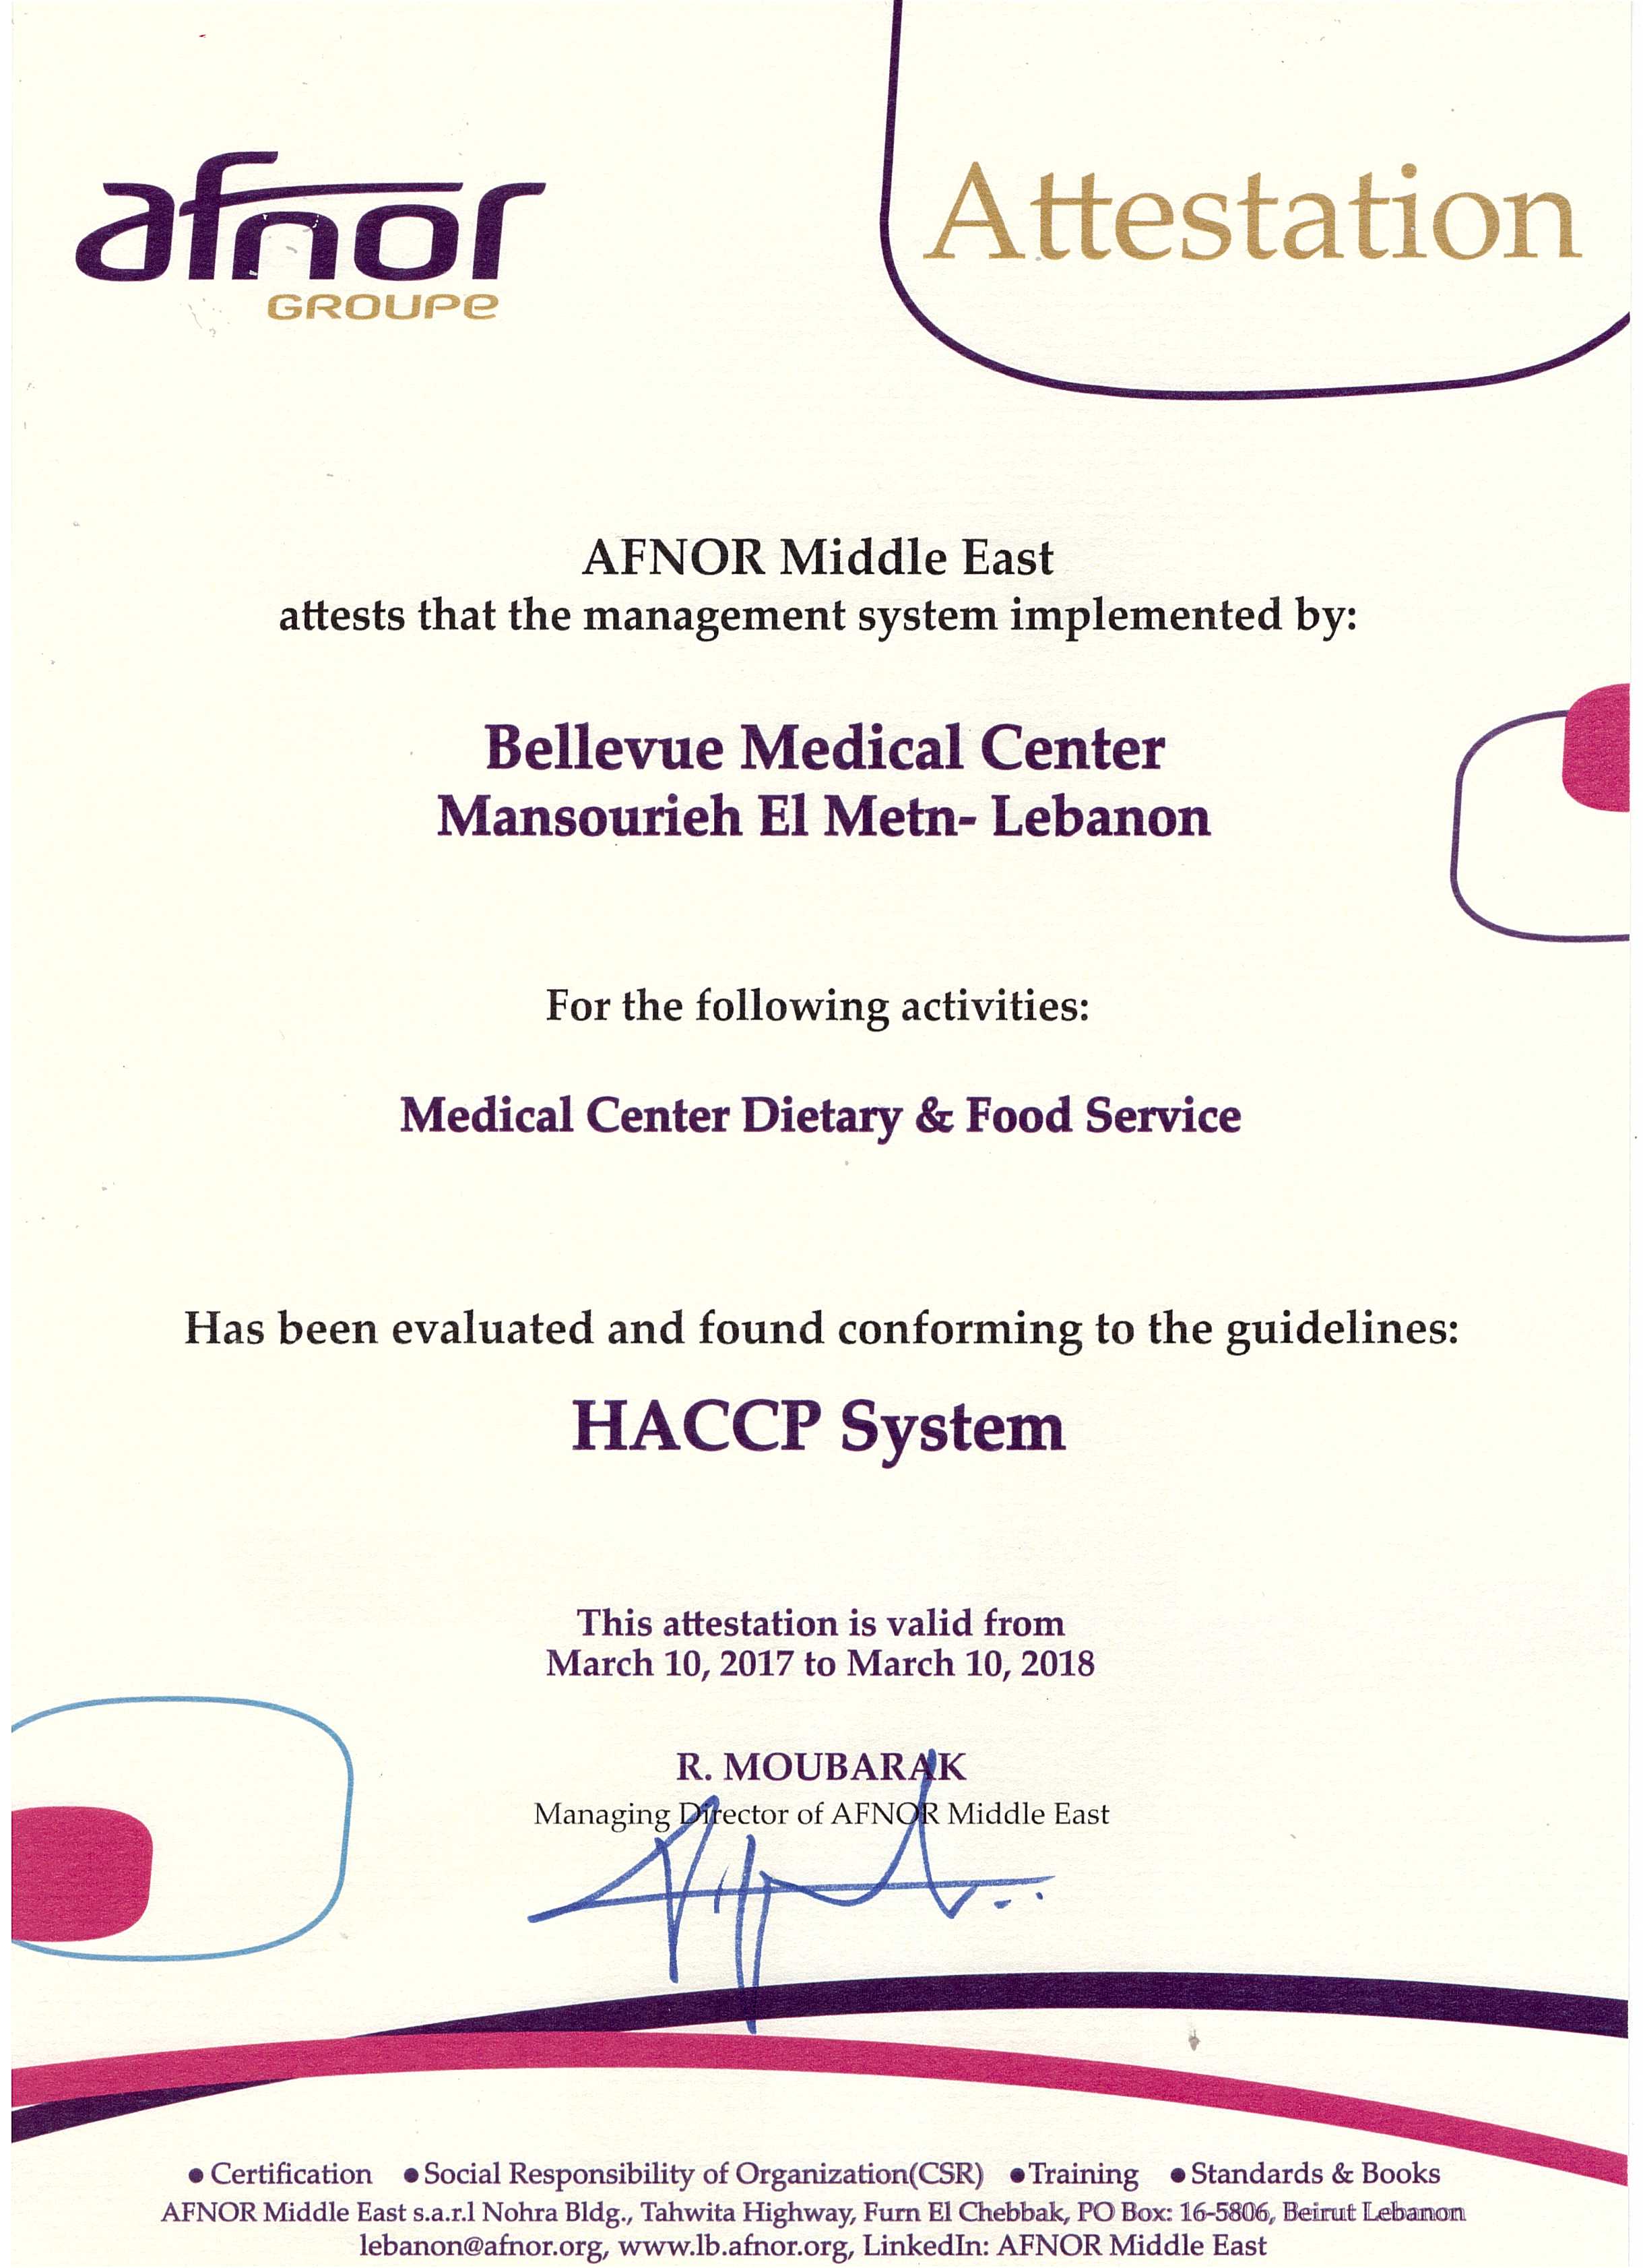 - Raccomandazioni Chiave per Implementare un Piano HACCP Efficace